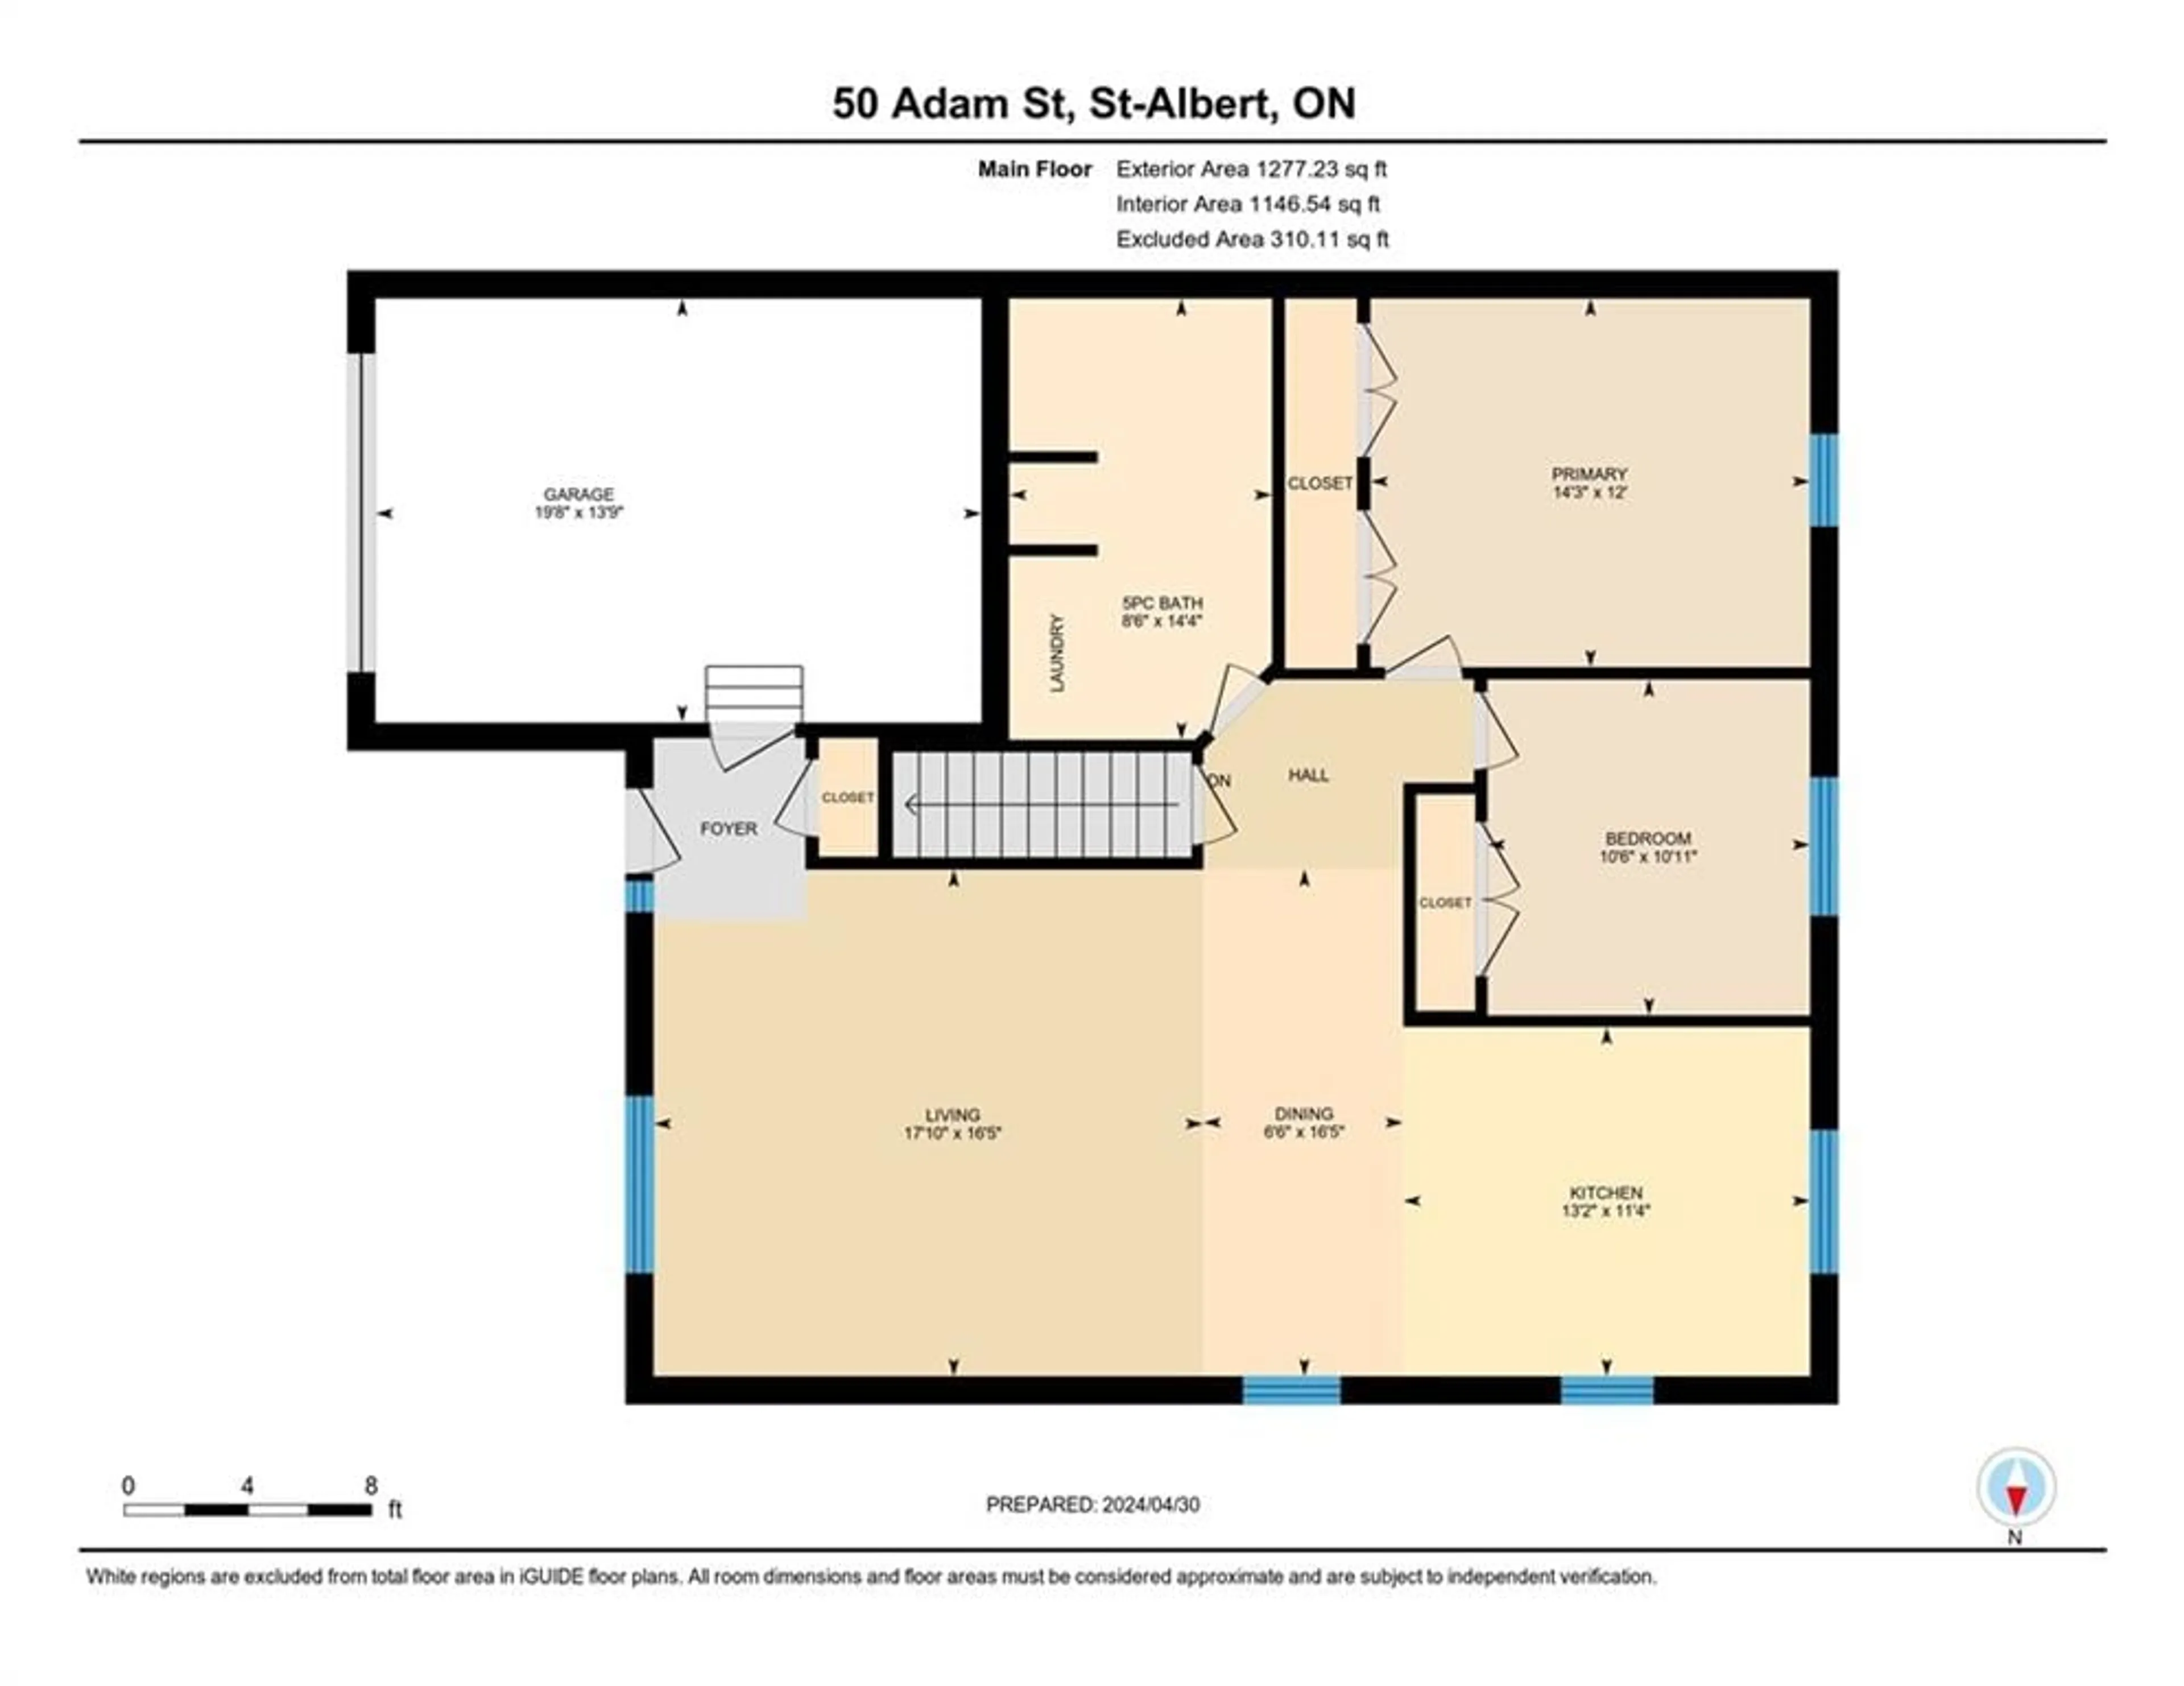 Floor plan for 50 ADAM St, St Albert Ontario K0A 3C0